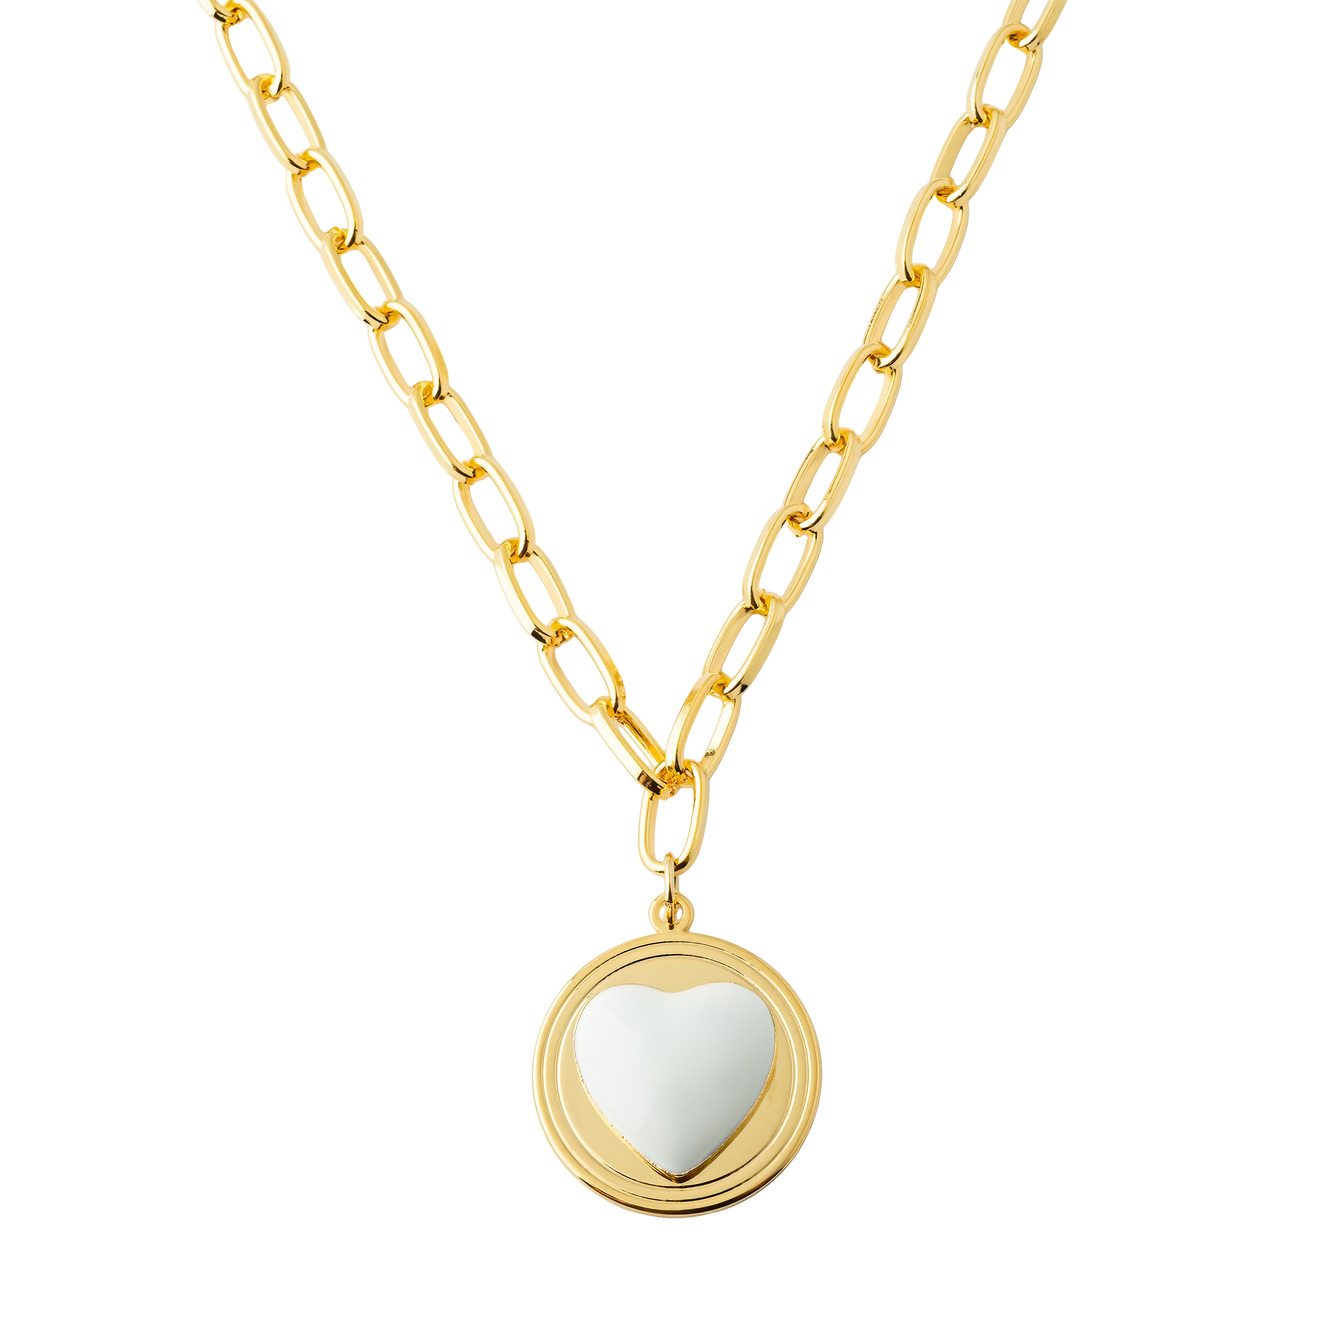 Aqua Золотистое колье-цепь с медальоном с белым сердцем